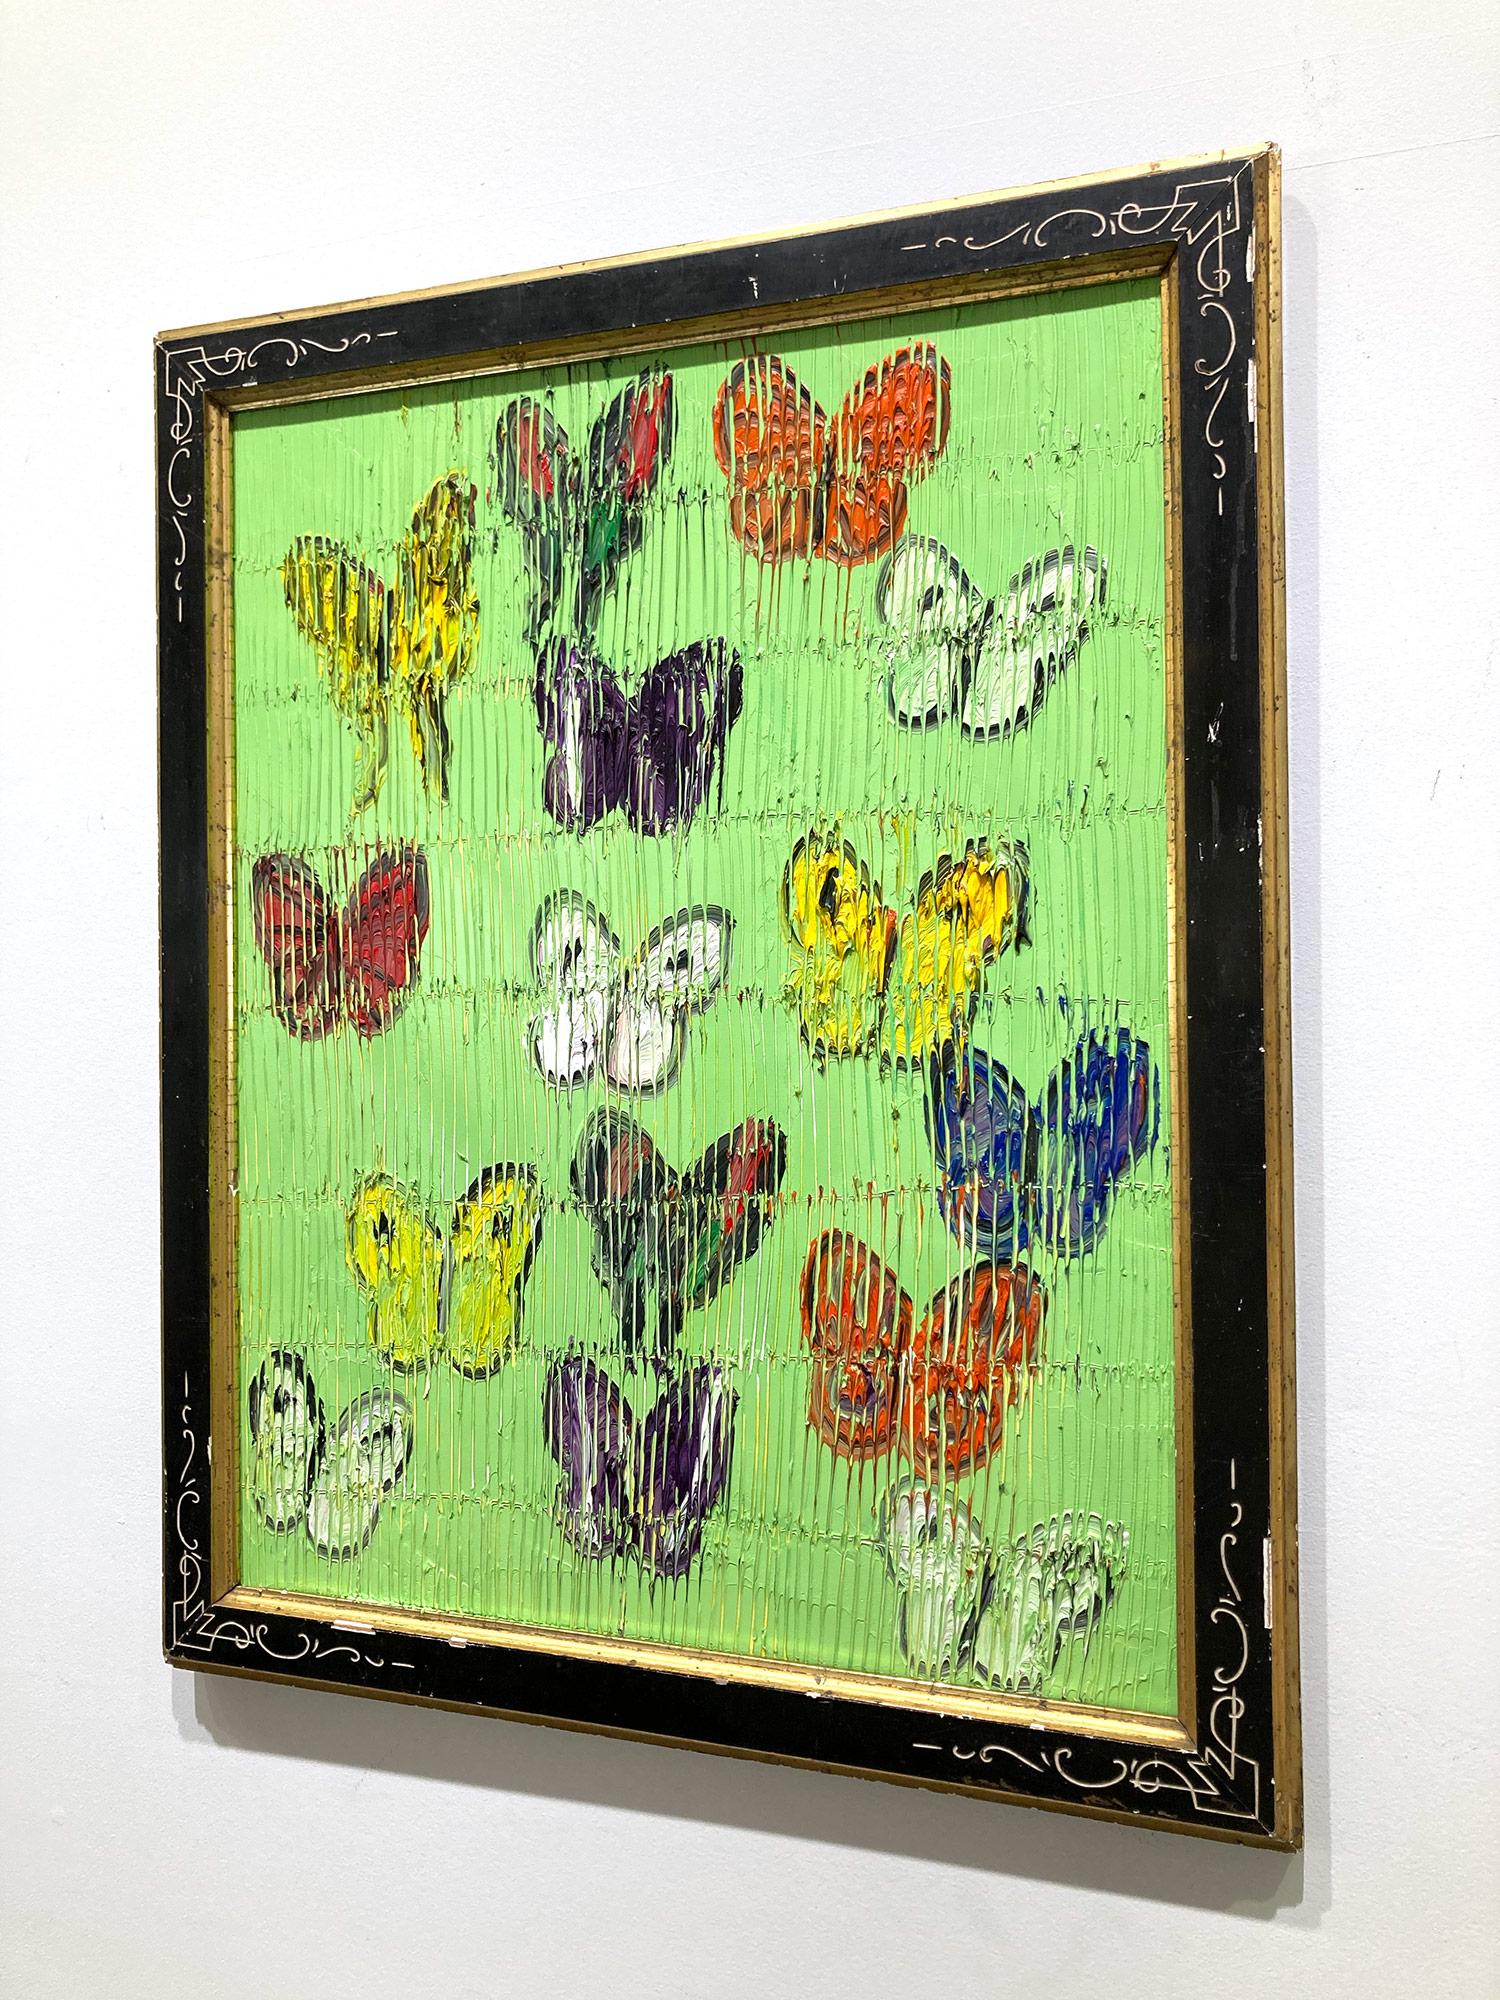 Eine wunderbare Komposition eines der ikonischsten Motive von Slonem, nämlich Schmetterlinge. Dieses Stück zeigt mehrfarbige, zarte Schmetterlinge, die in einer wunderschönen Pariser Grünlandschaft aufsteigen. Slonem zeichnet seine berühmten